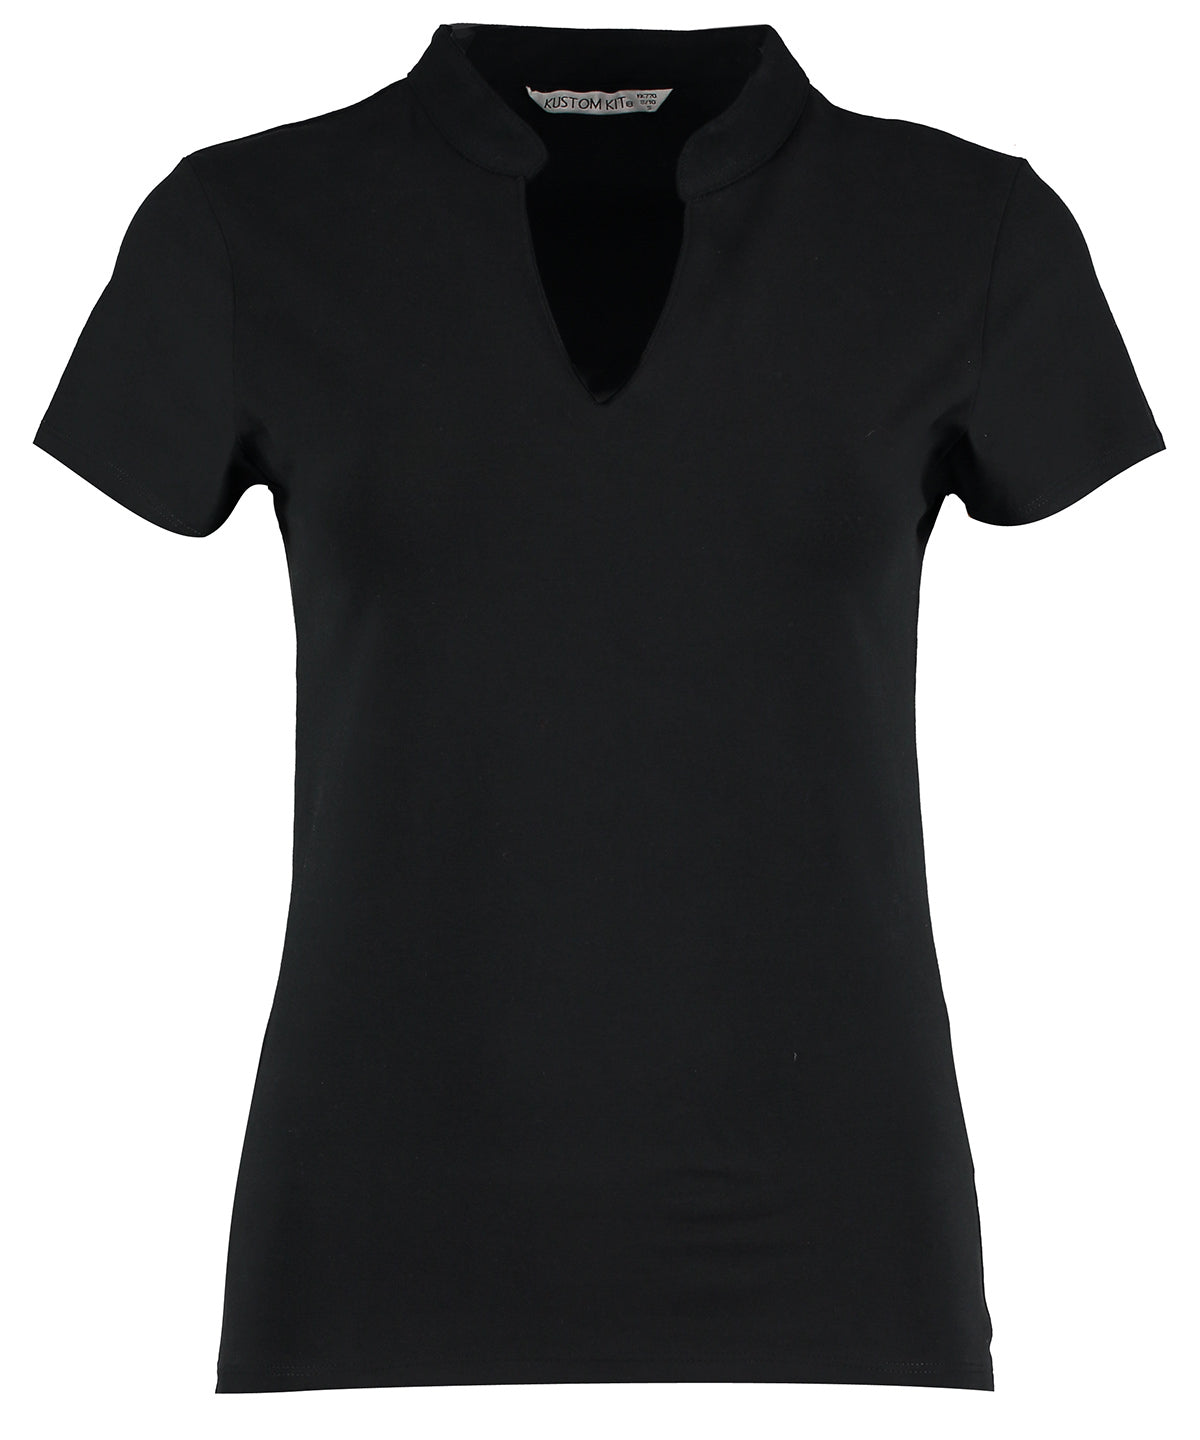 Kustom Kit Womens corporate short-sleeved top v-neck mandarin collar